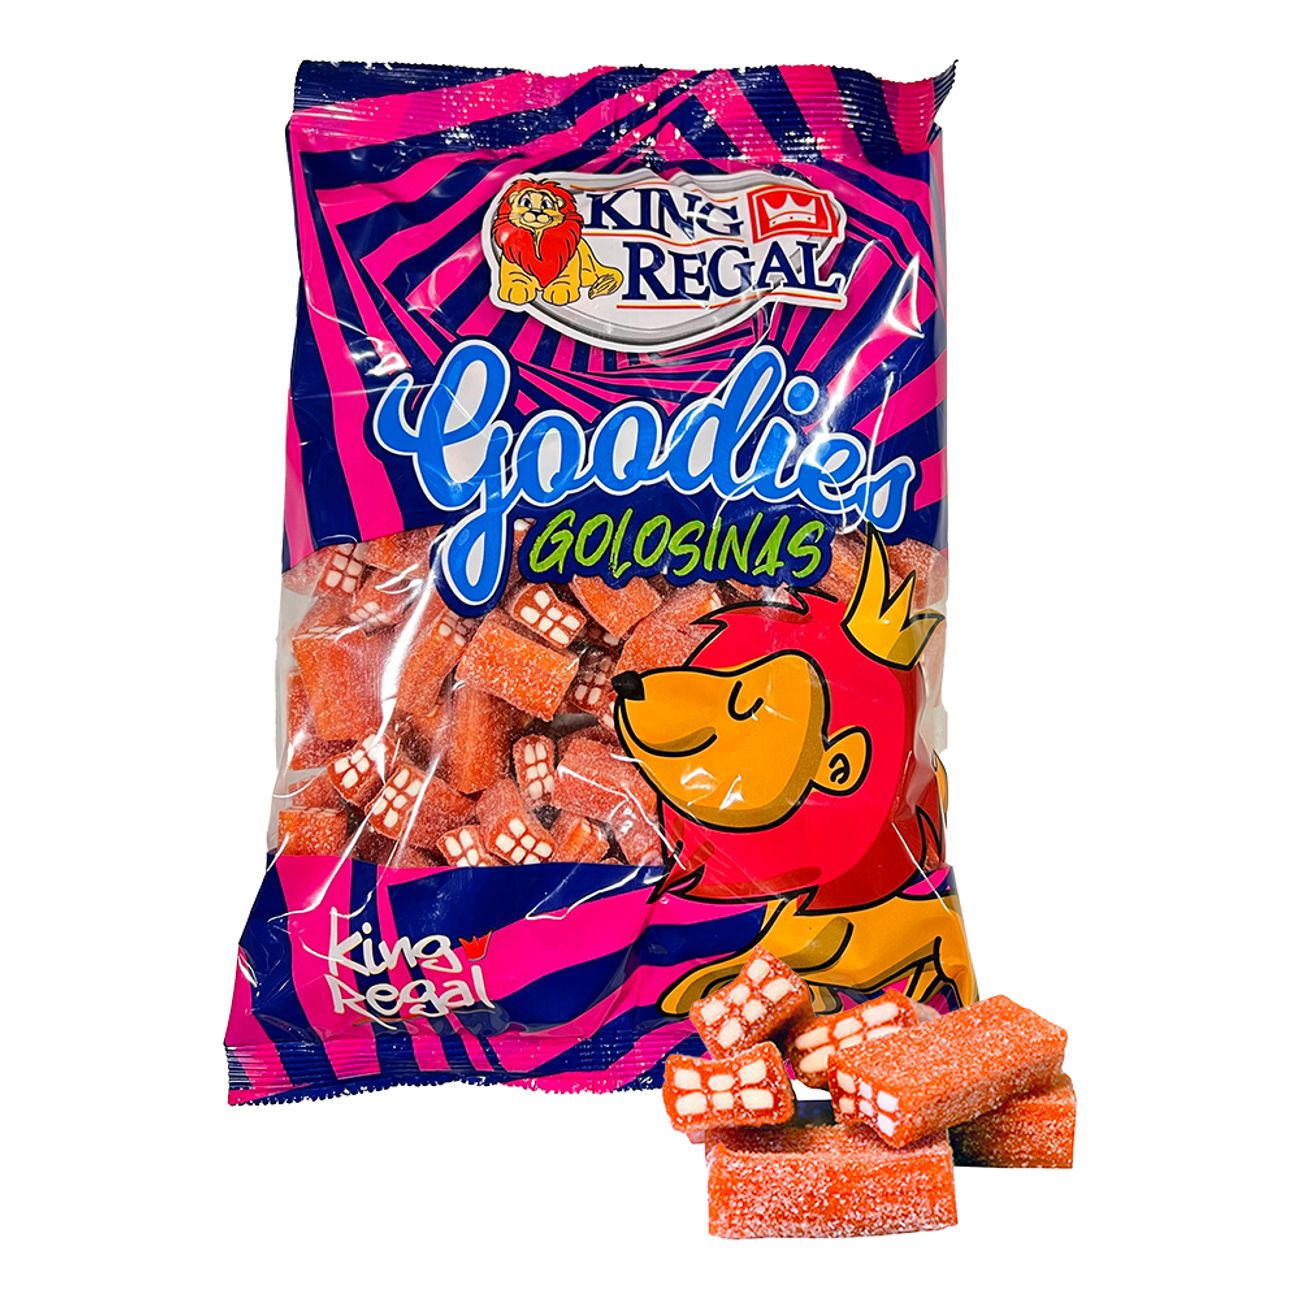 sockrade-tegelstenar-jordgubb-storpack-74246-2